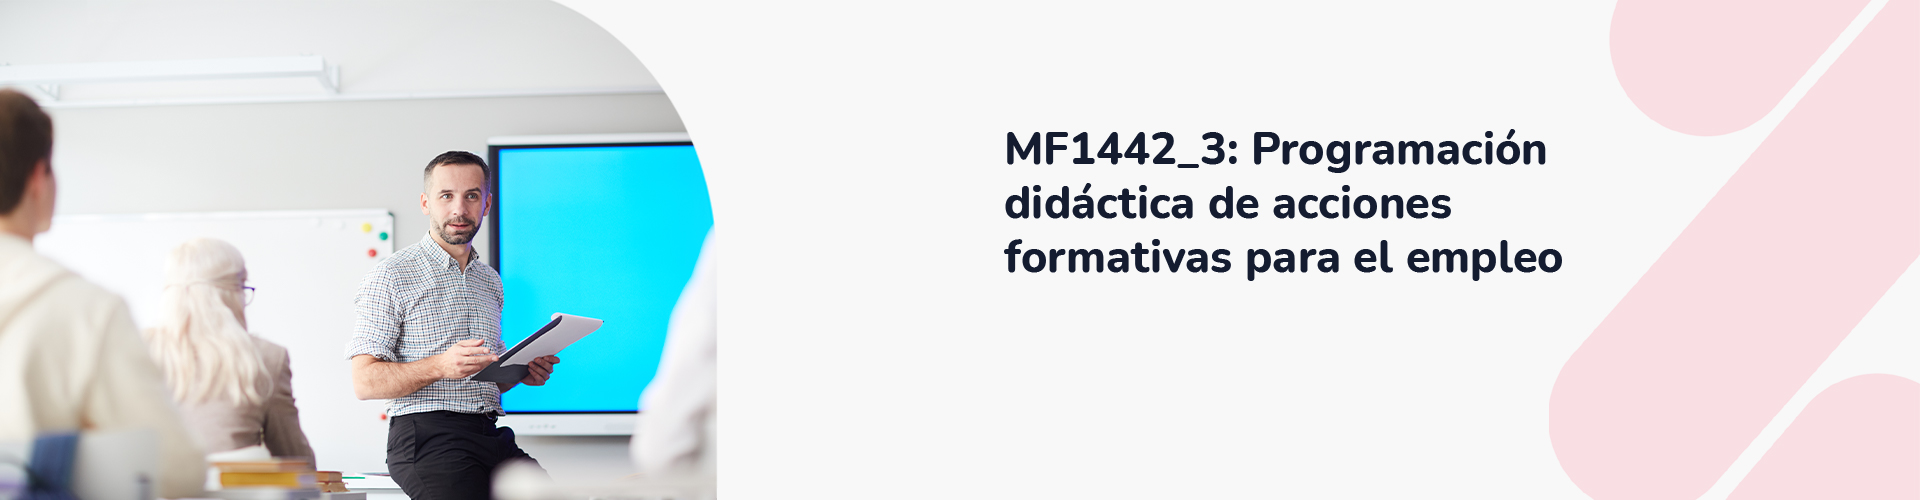 MF1442_3_ Programación didáctica de acciones formativas para el empleo